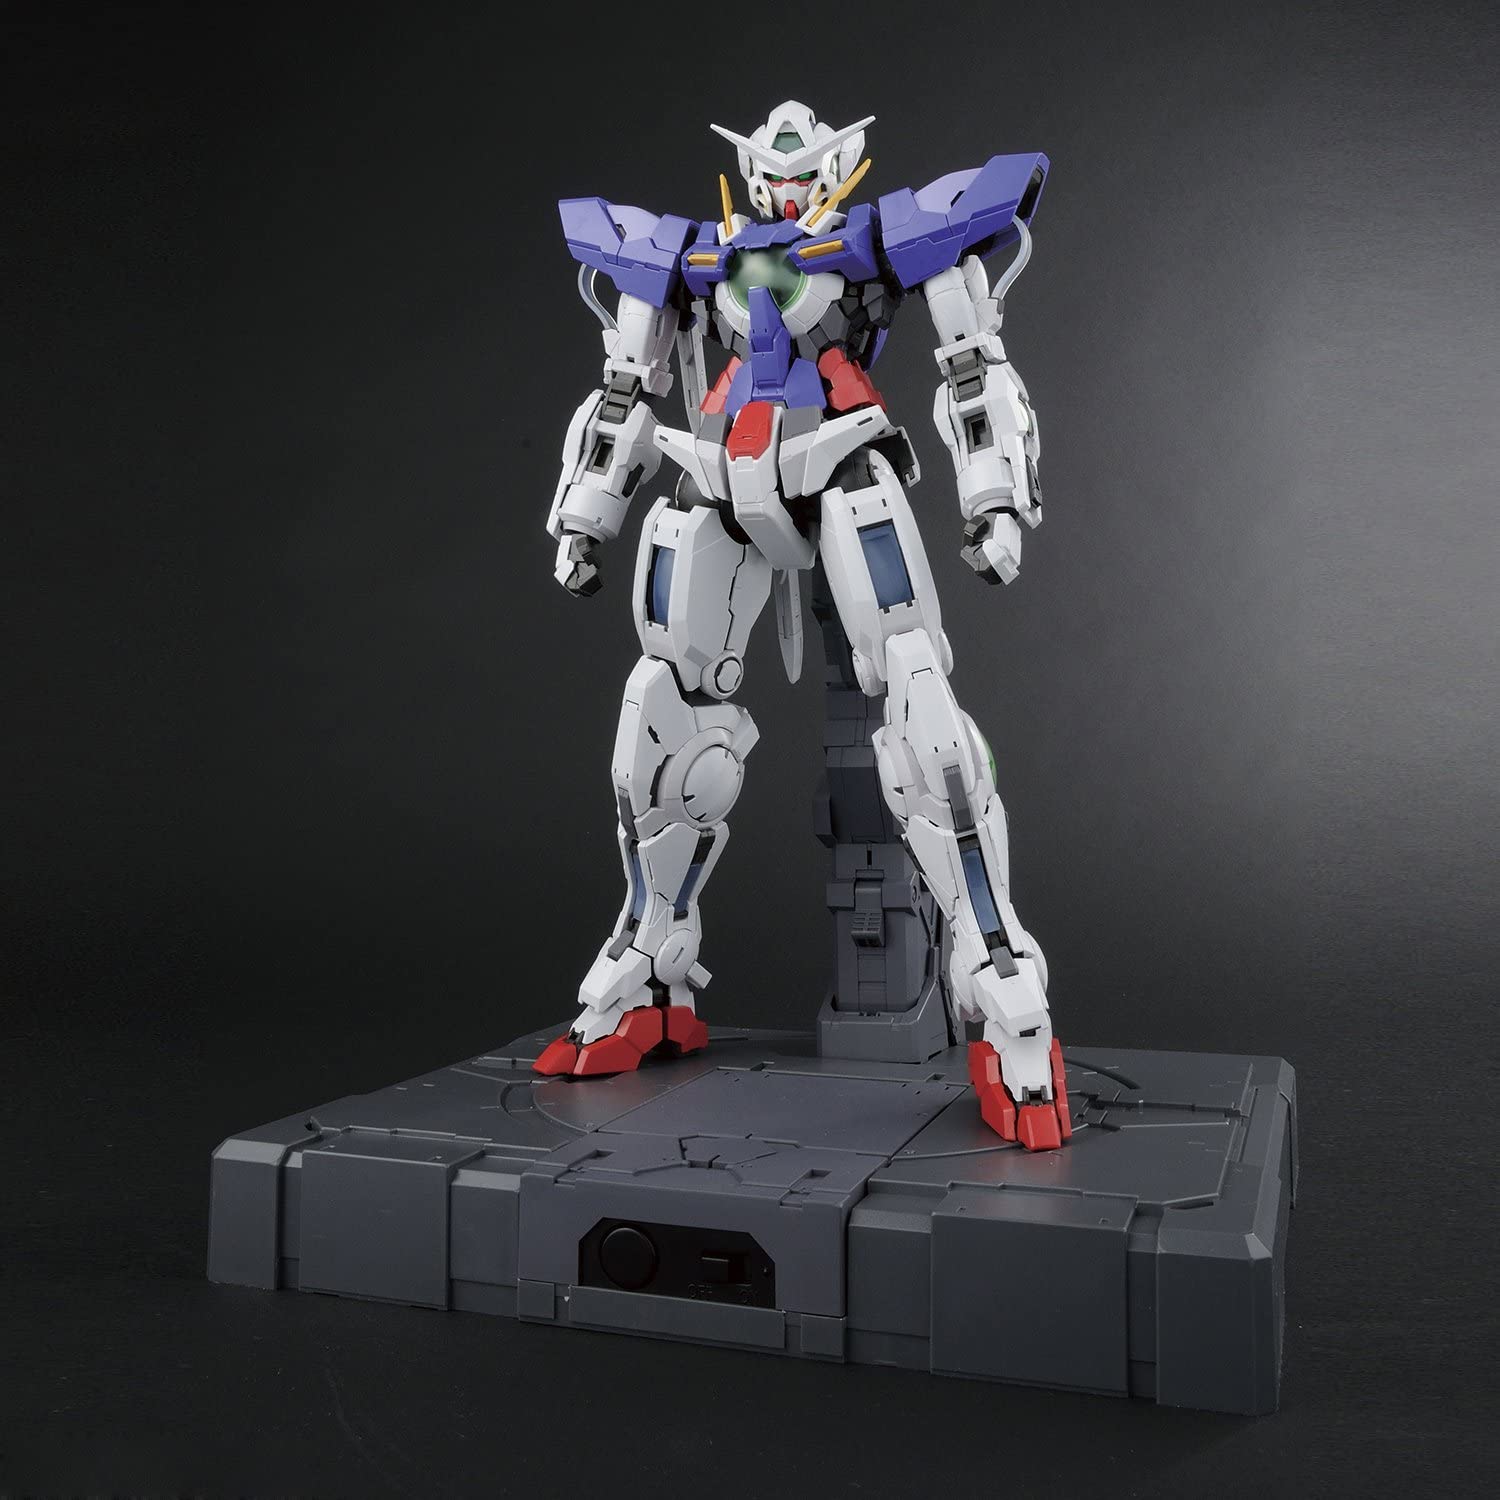 Lighting Mode Model Kit Bandai Hobby PG 1/60 GN-001 Gundam Exia 